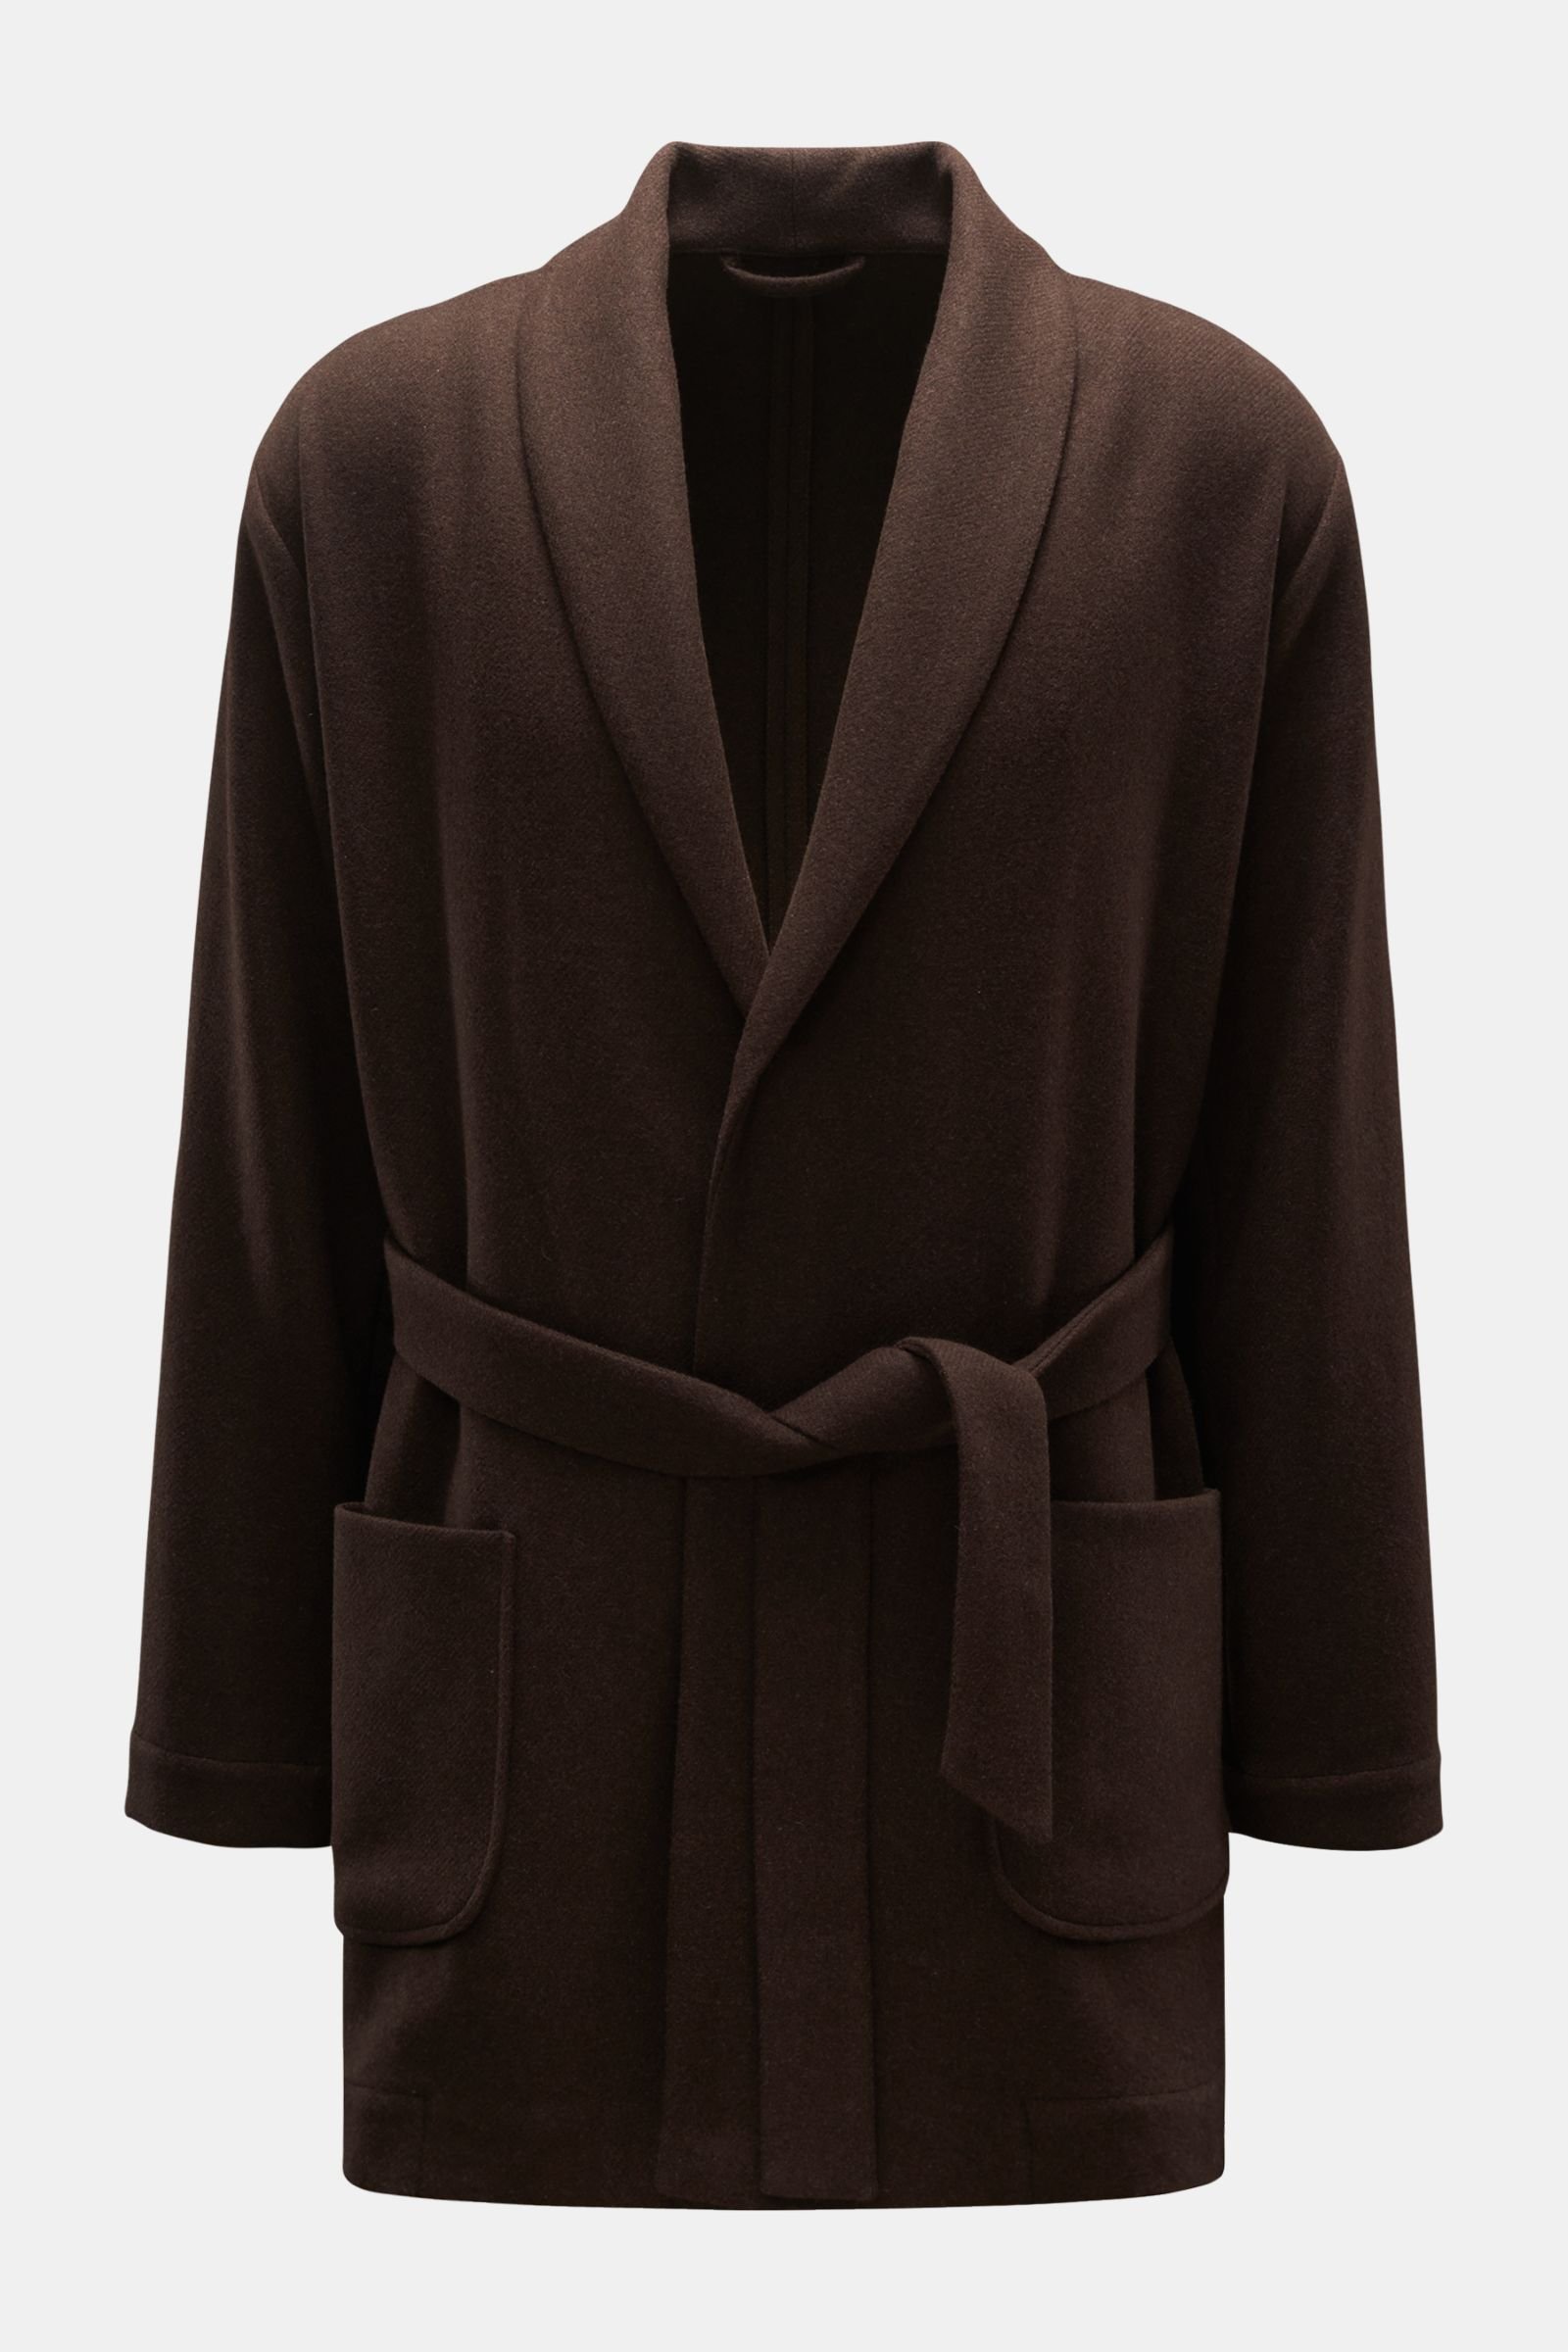 Wool short coat 'Cardigan Coat' dark brown